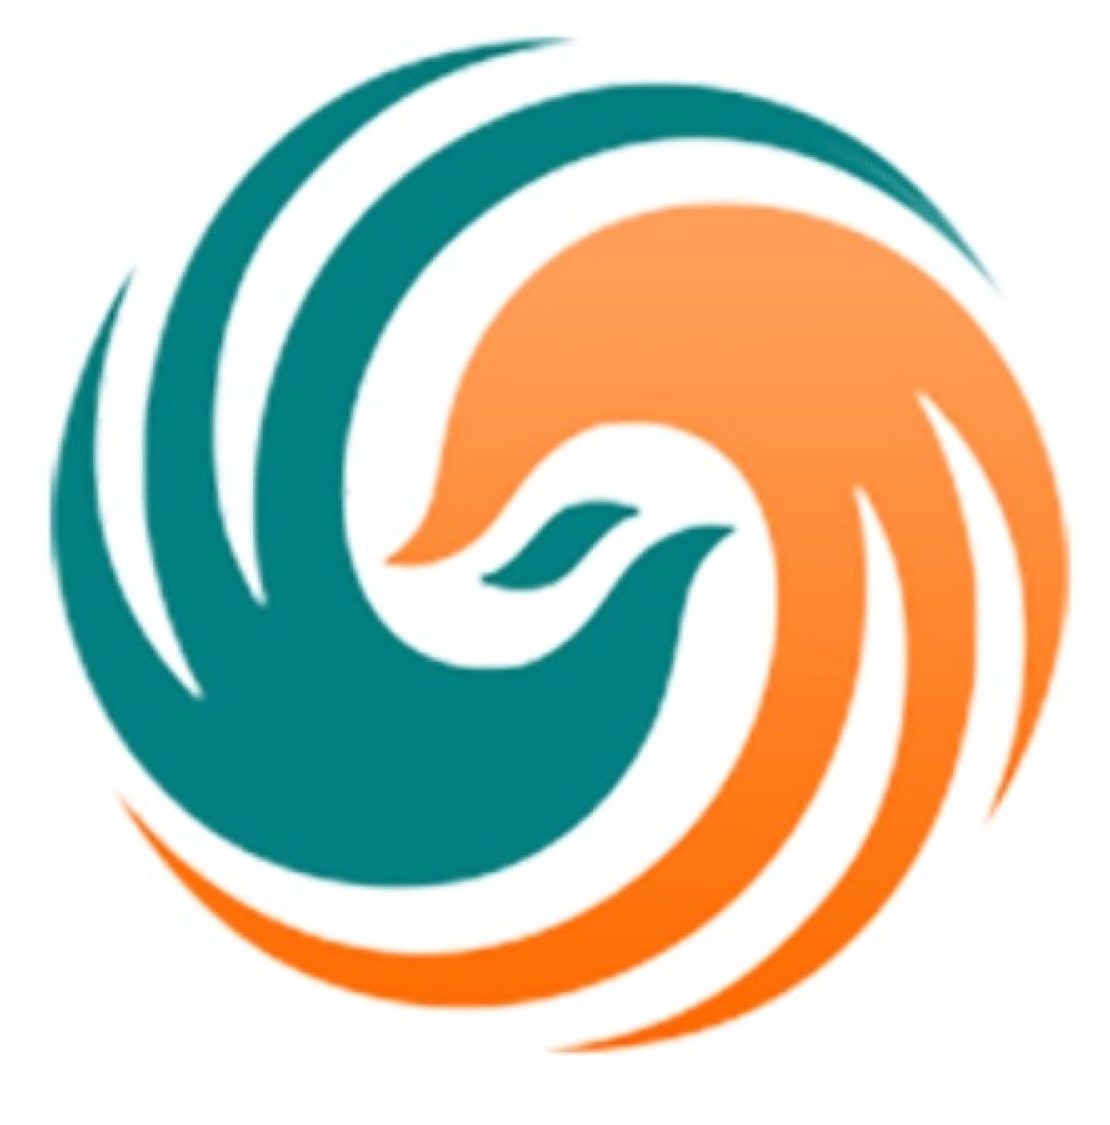 tvtap-logo-e1535221925412